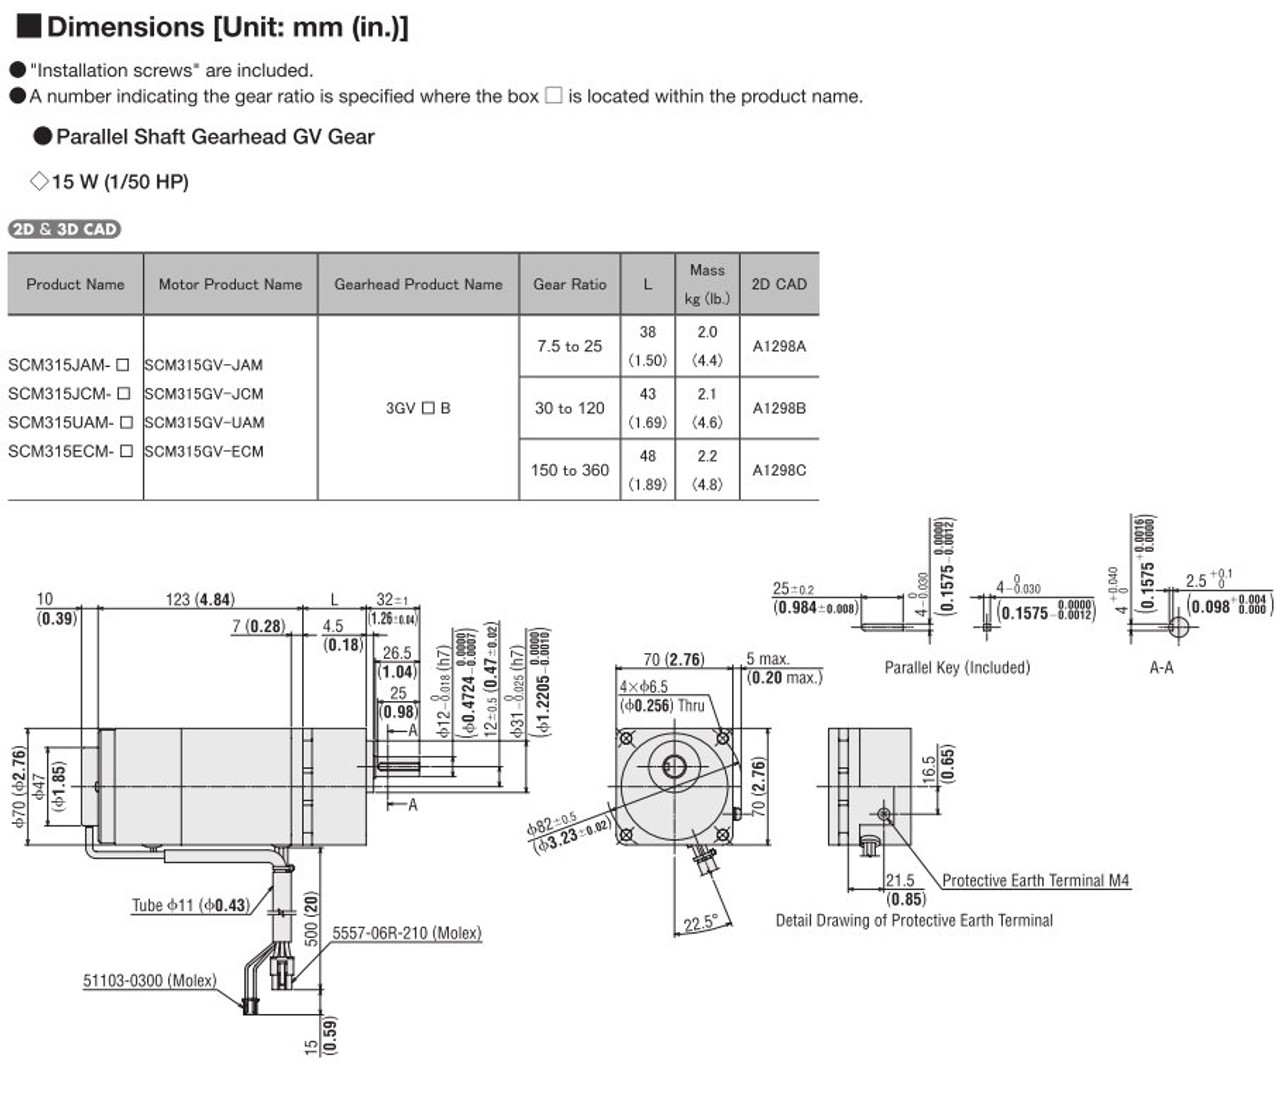 SCM315ECM-250 / DSCD15ECM - Dimensions